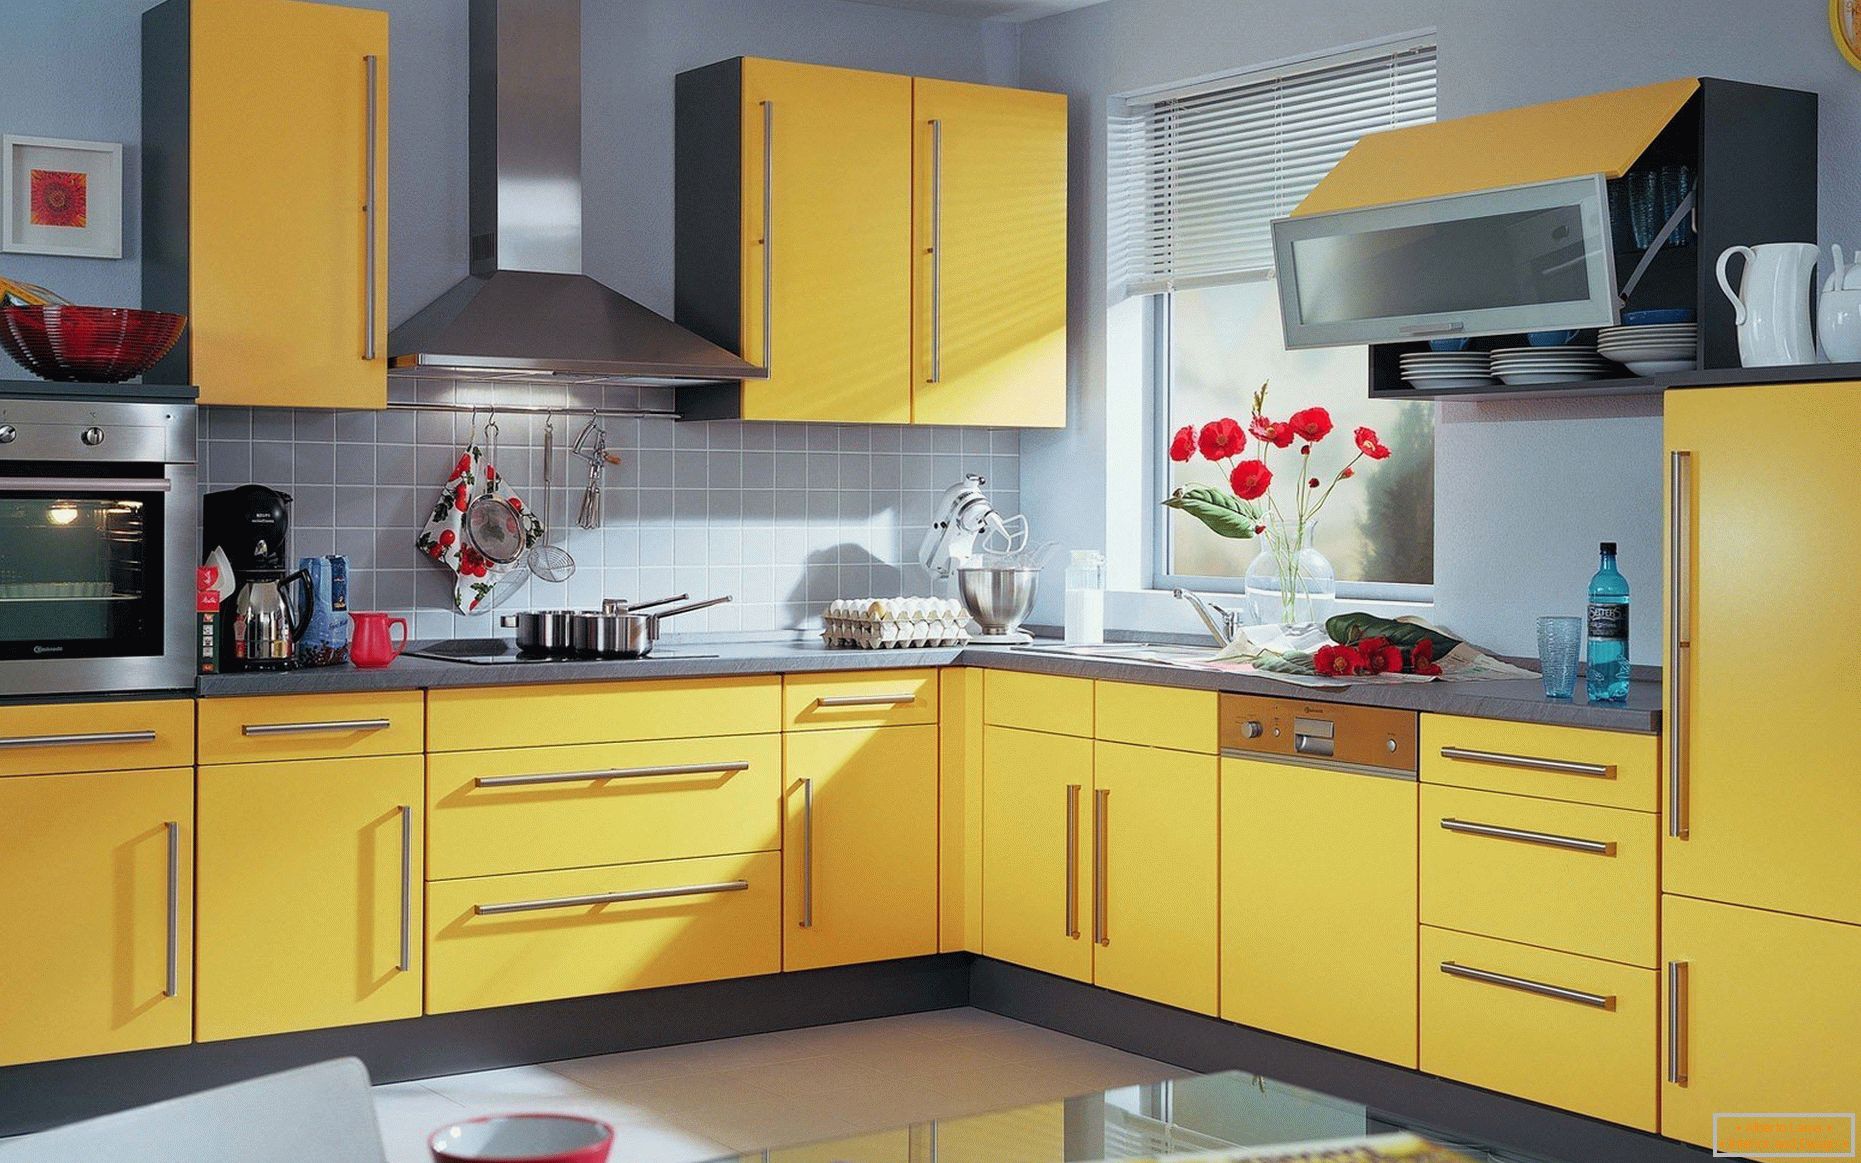 Stěny v pastelových barvách, žlutá kuchyně